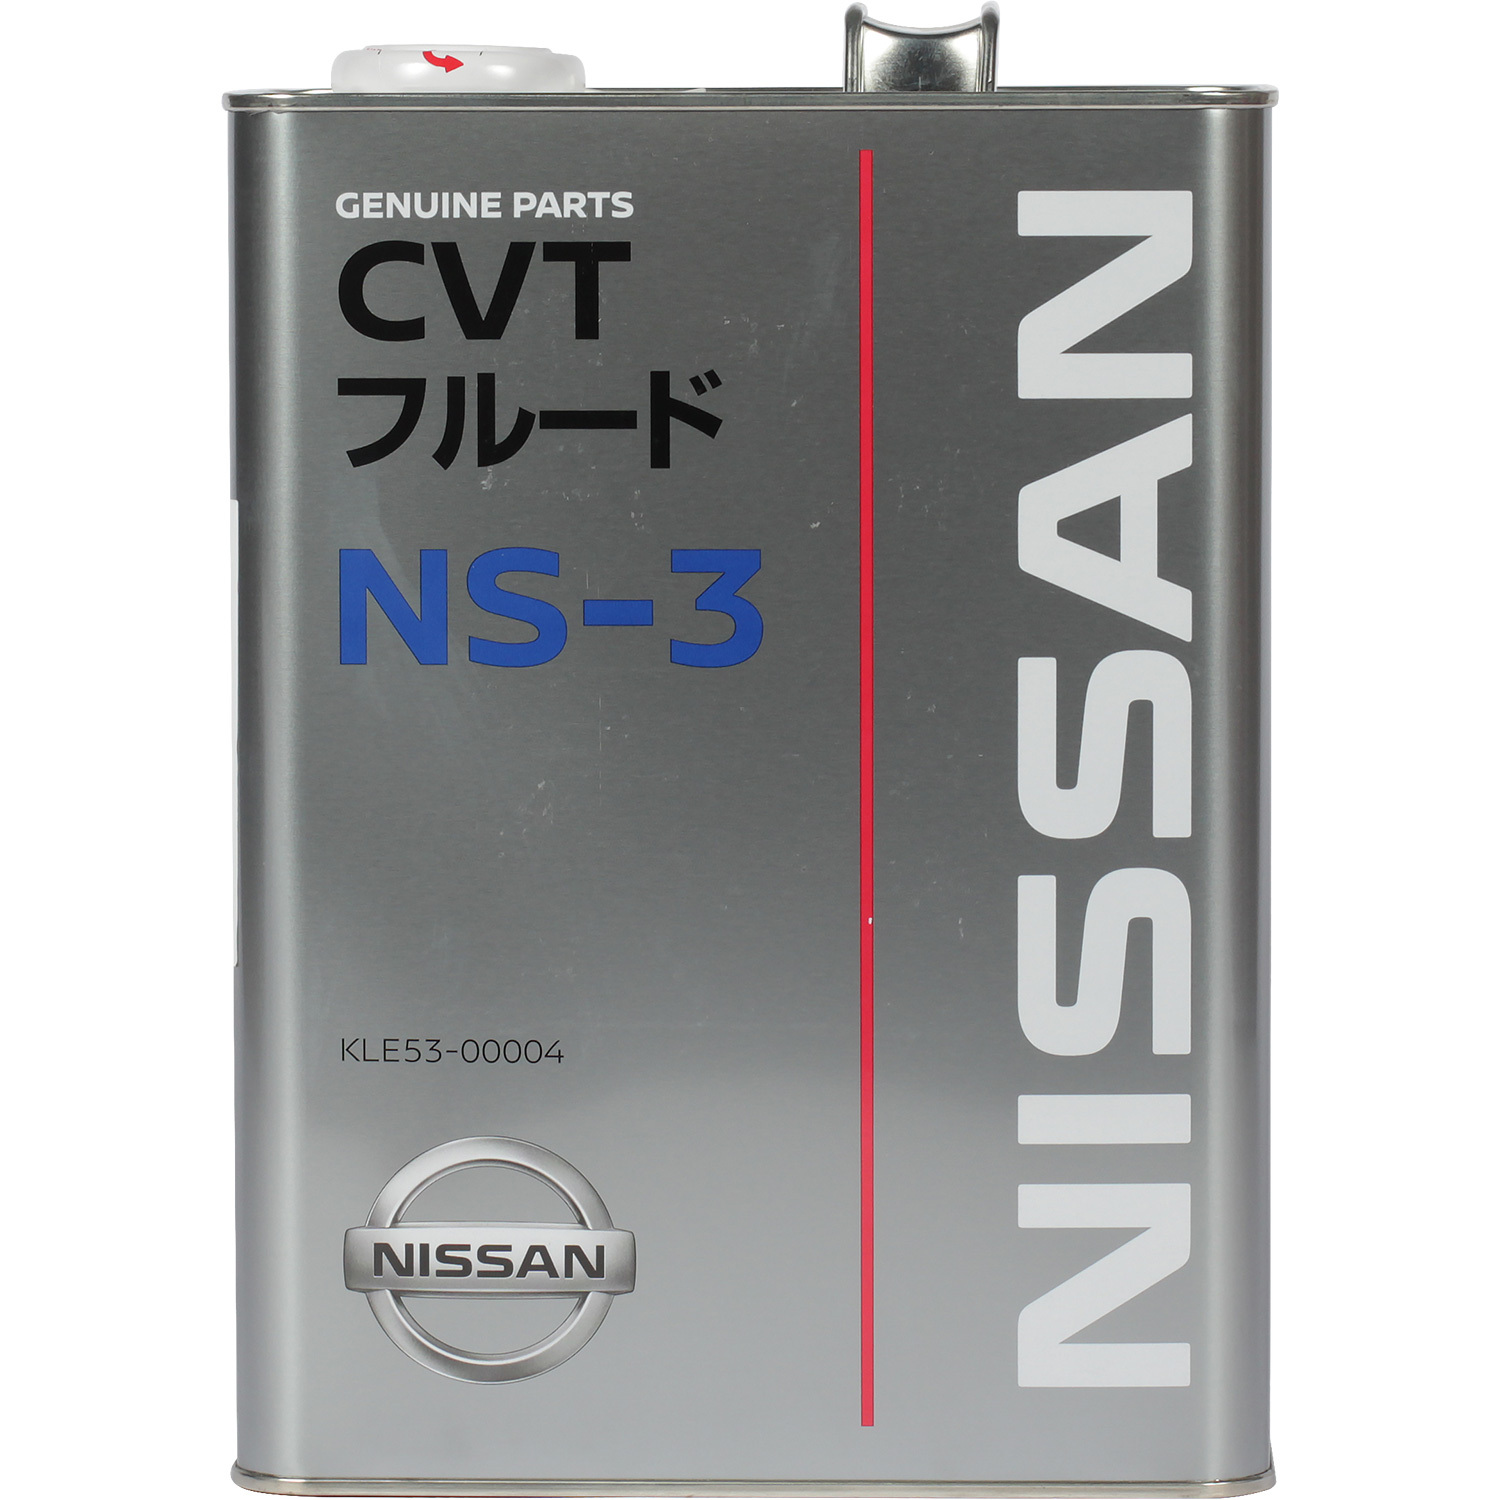 Nissan Масло трансмиссионное NISSAN CVT FLUID NS-3 4л